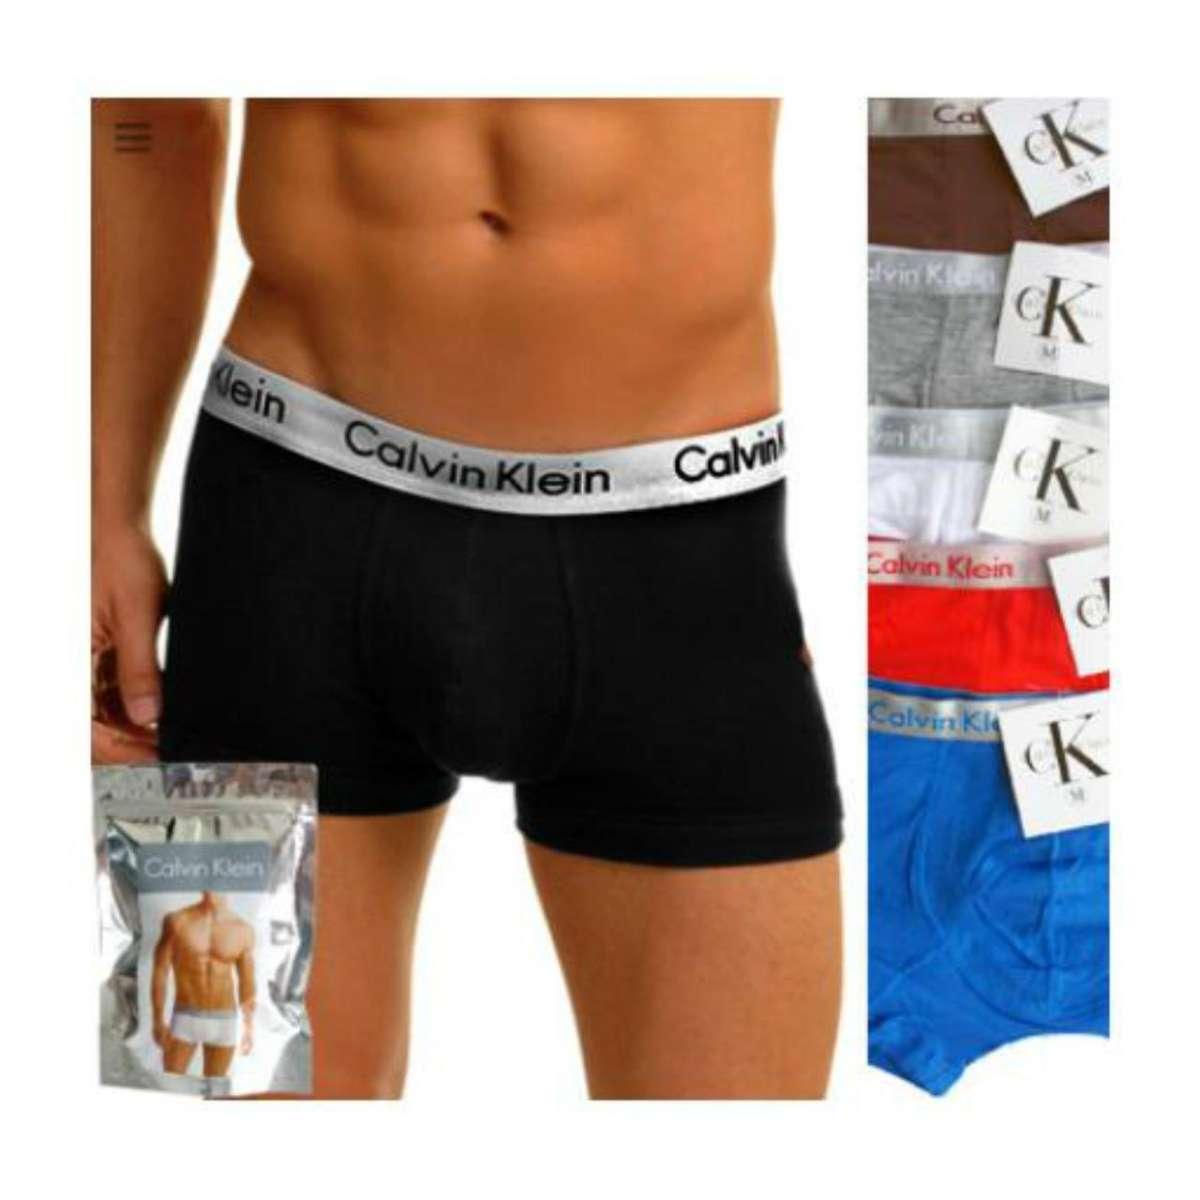 jual calvin klein underwear original